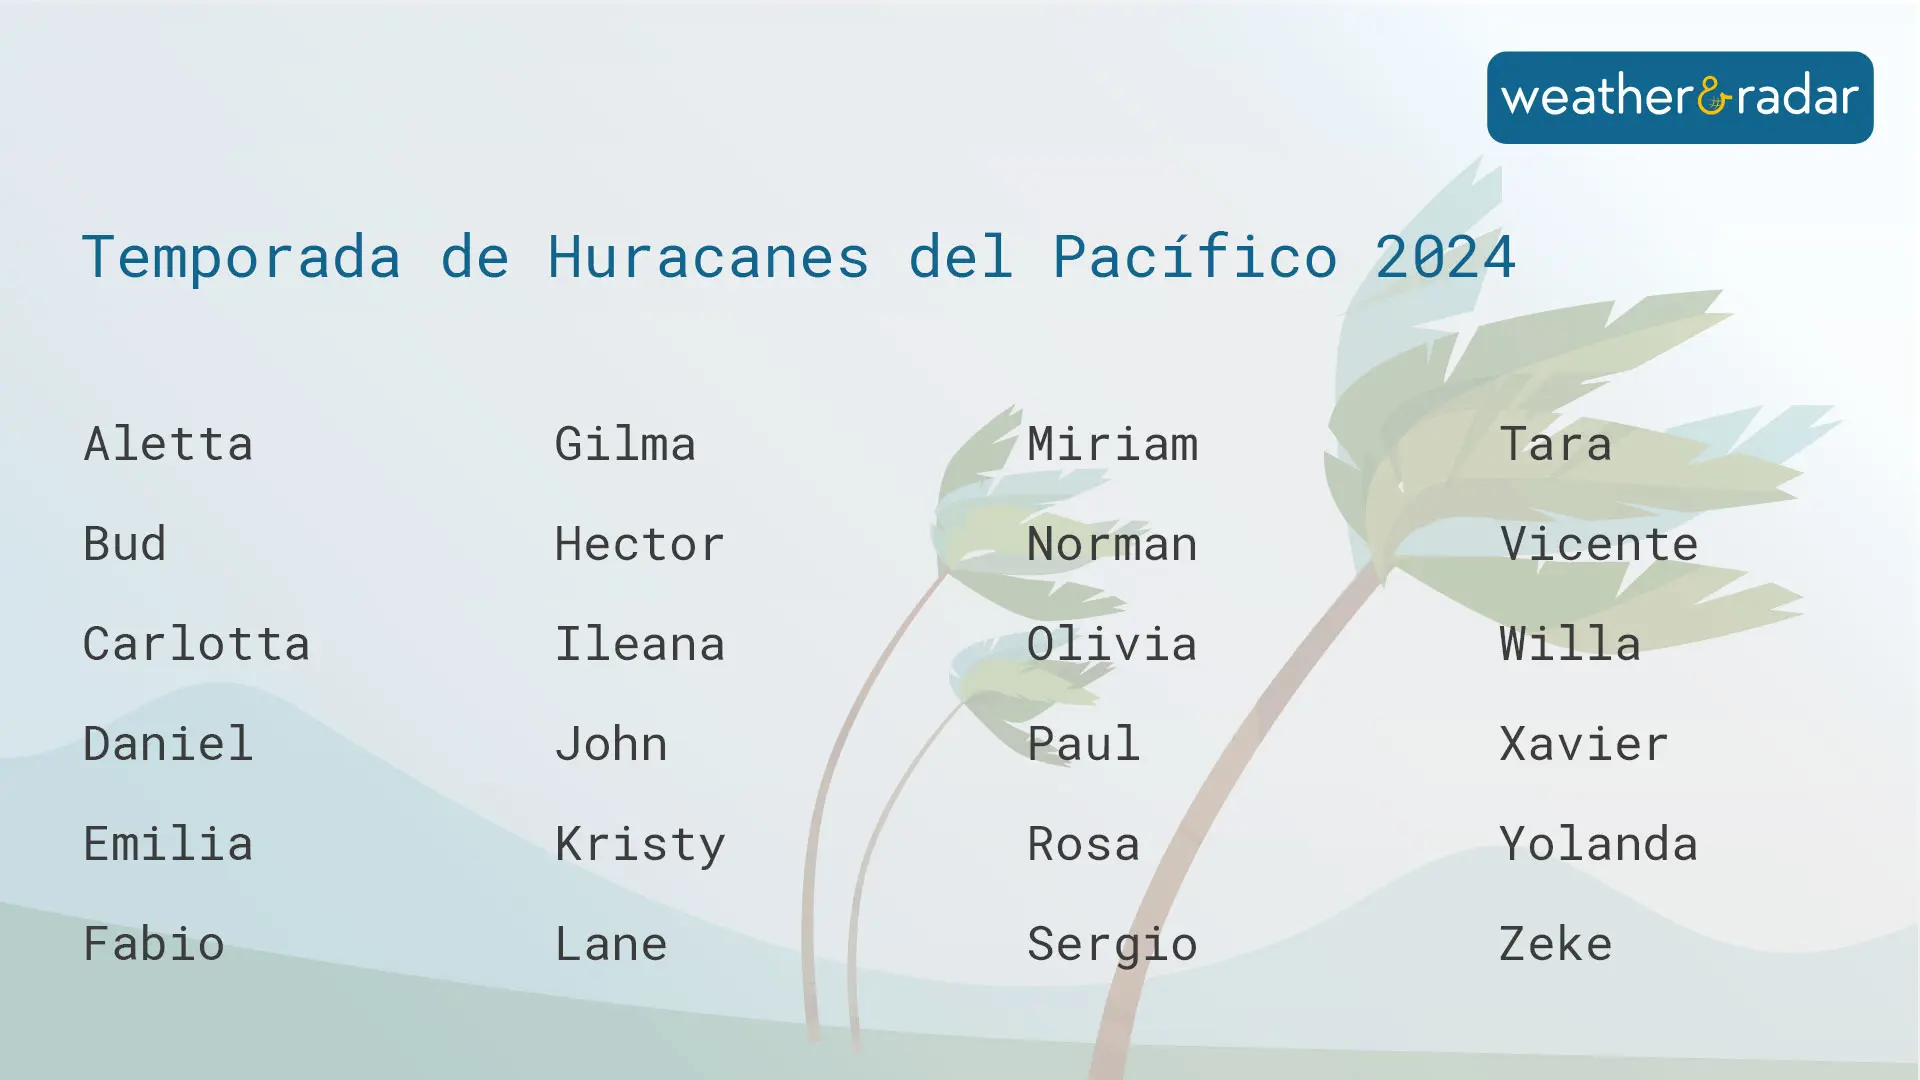 Nombres de la temporada de huracanes del Pacífico de 2024